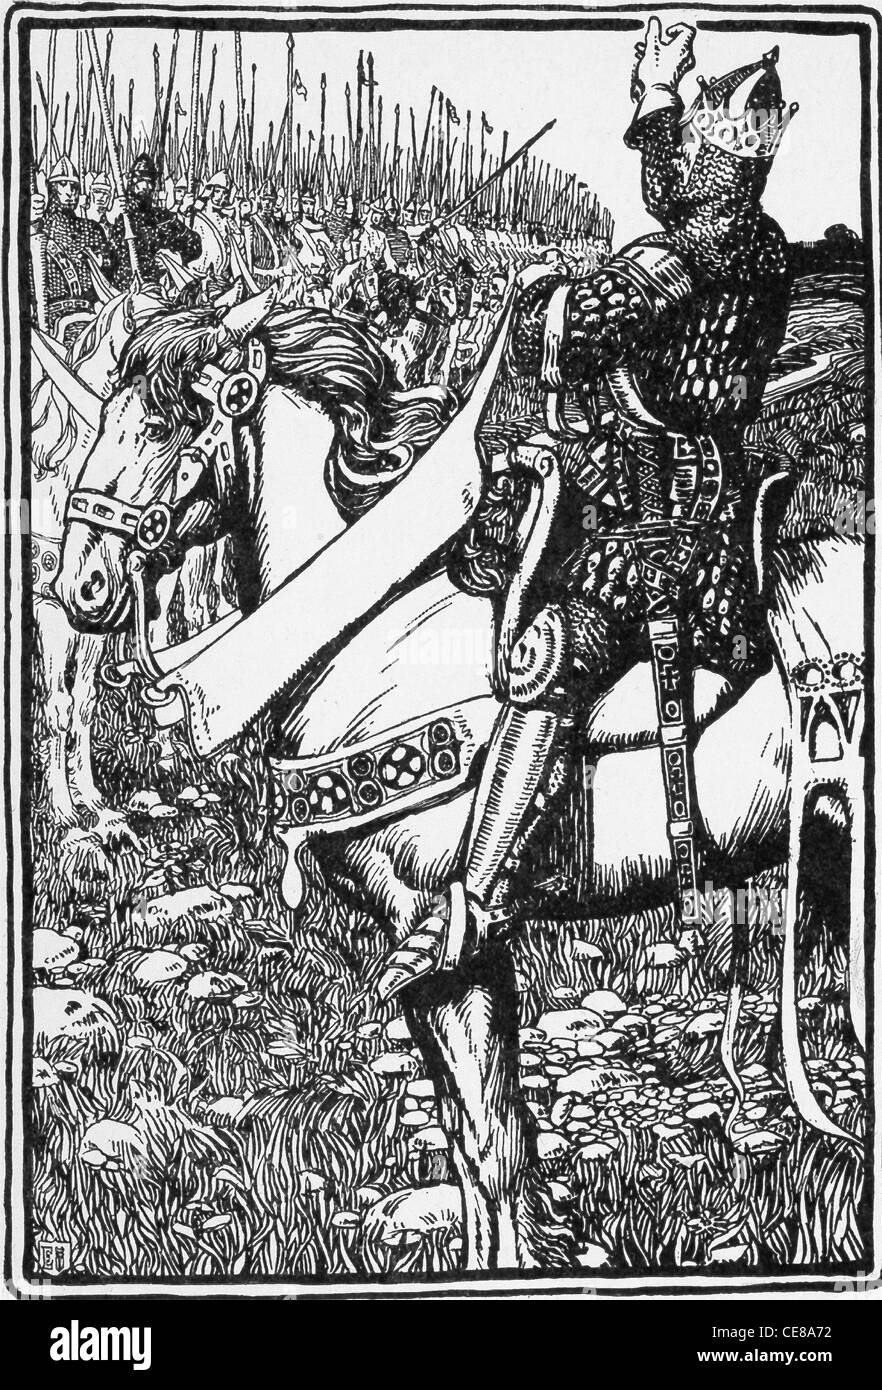 King Arthur è il leggendario sovrano britannico della fine del V e all'inizio del VI secolo. Qui, Arthur affronta le sue truppe. Foto Stock